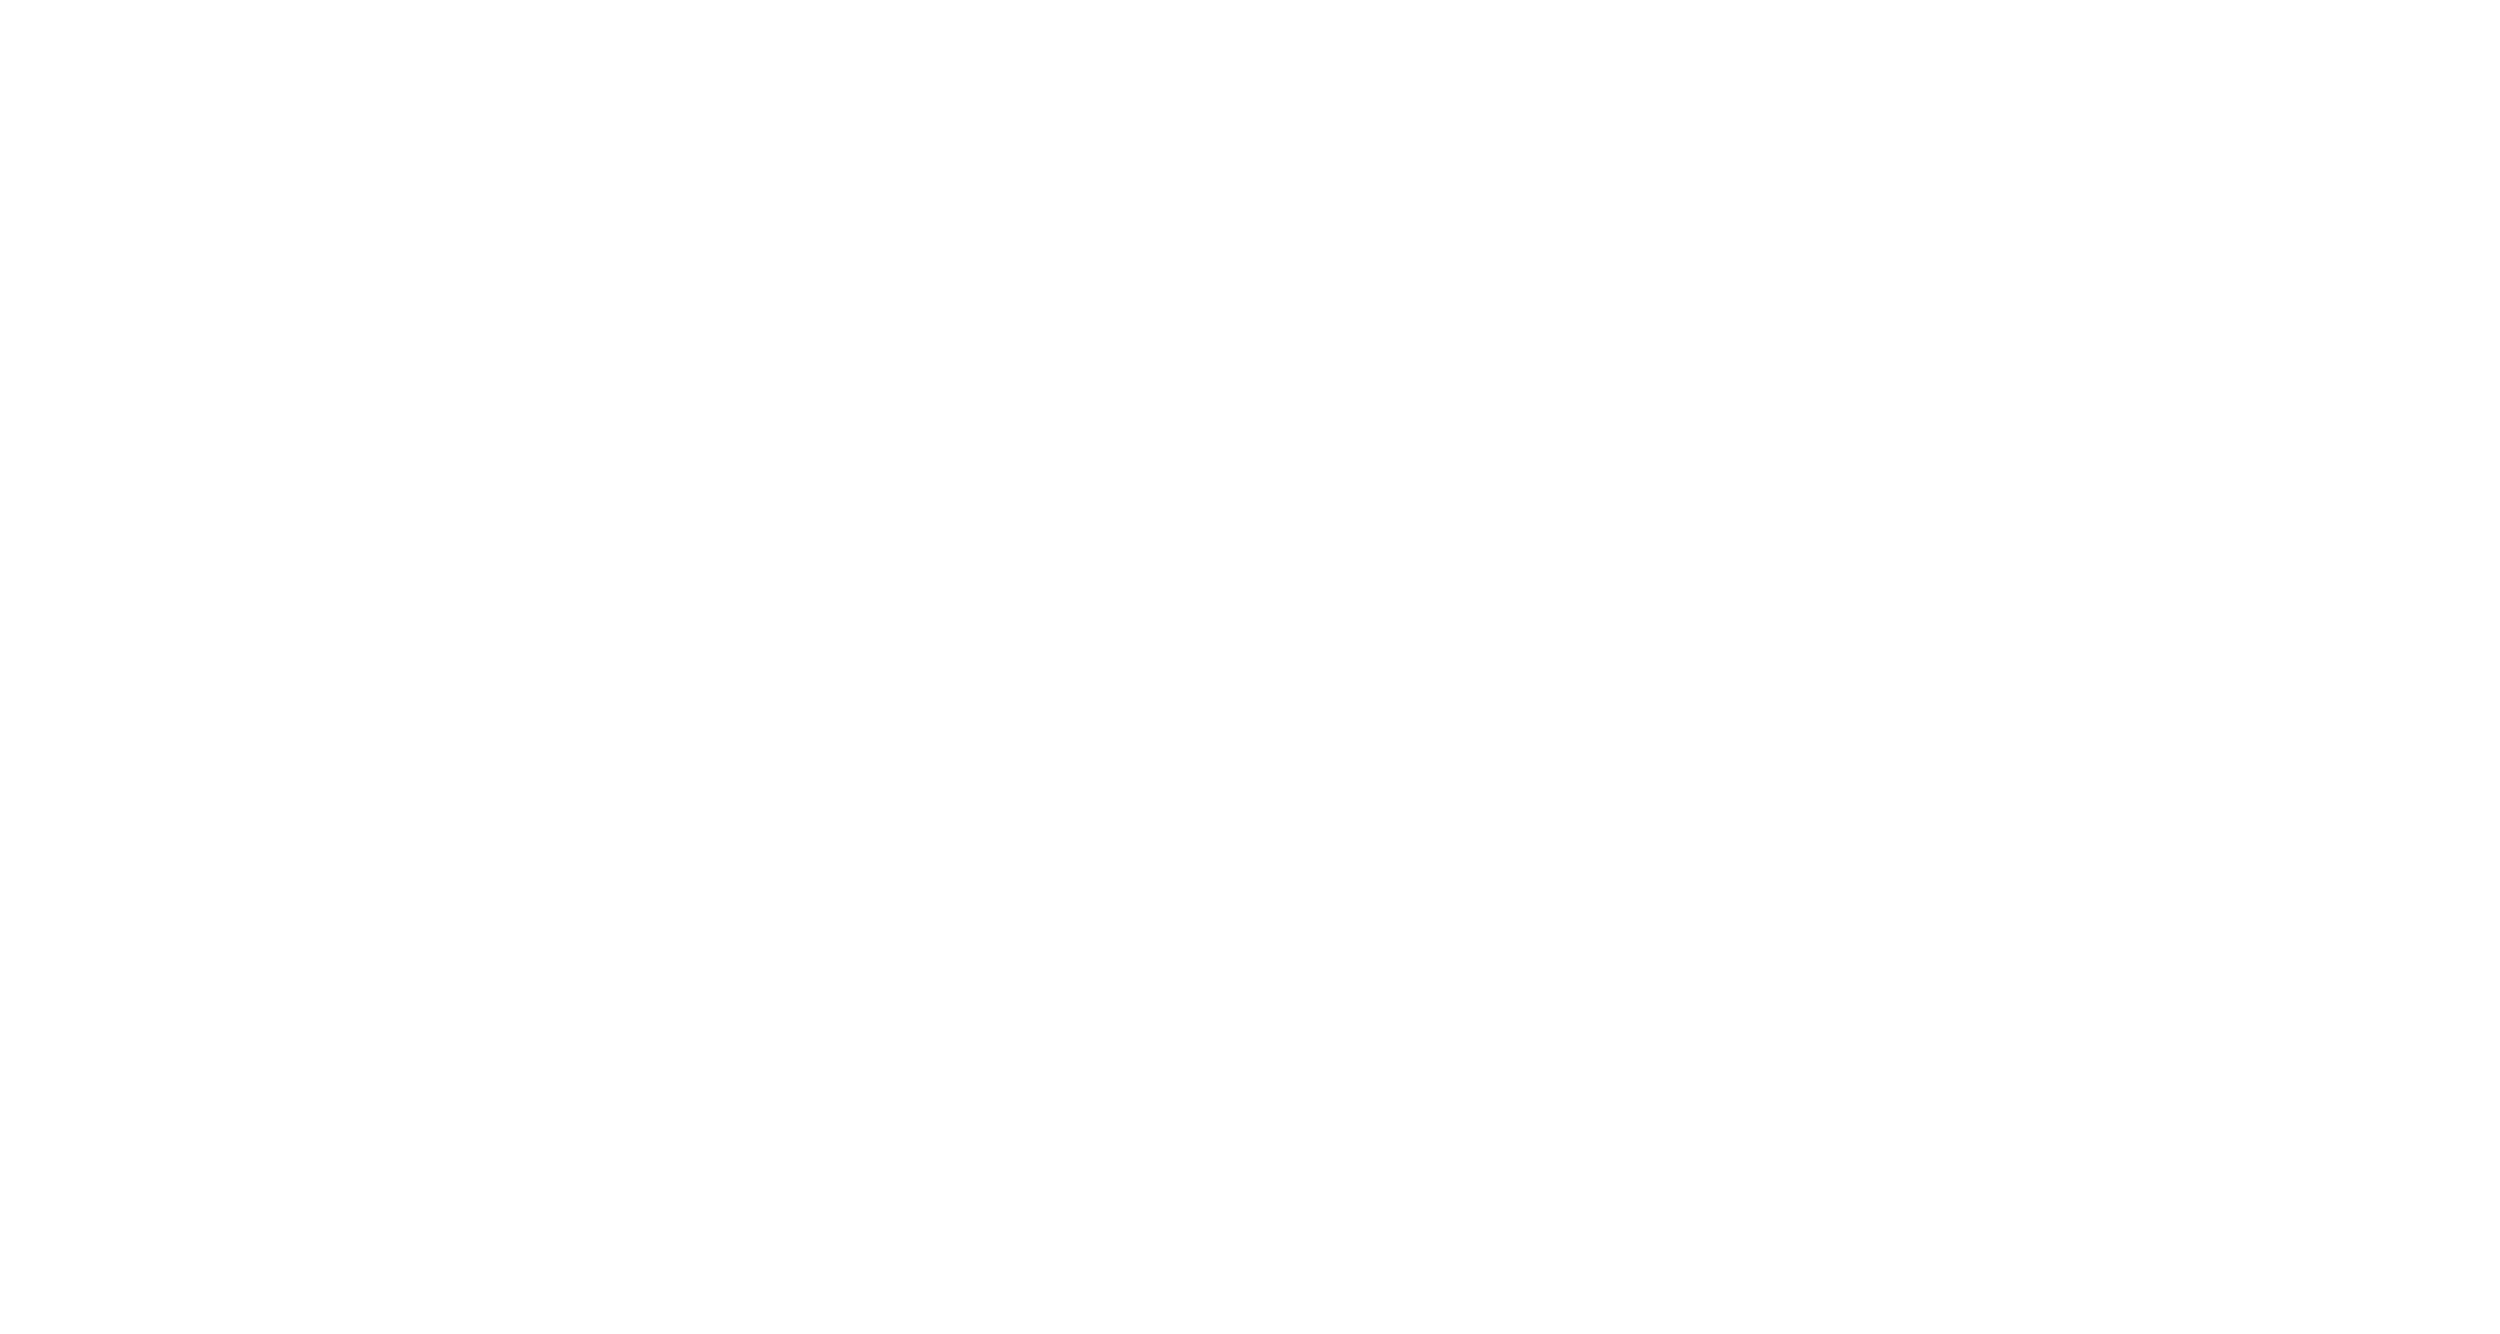 Birrificio Artigianale La Villana